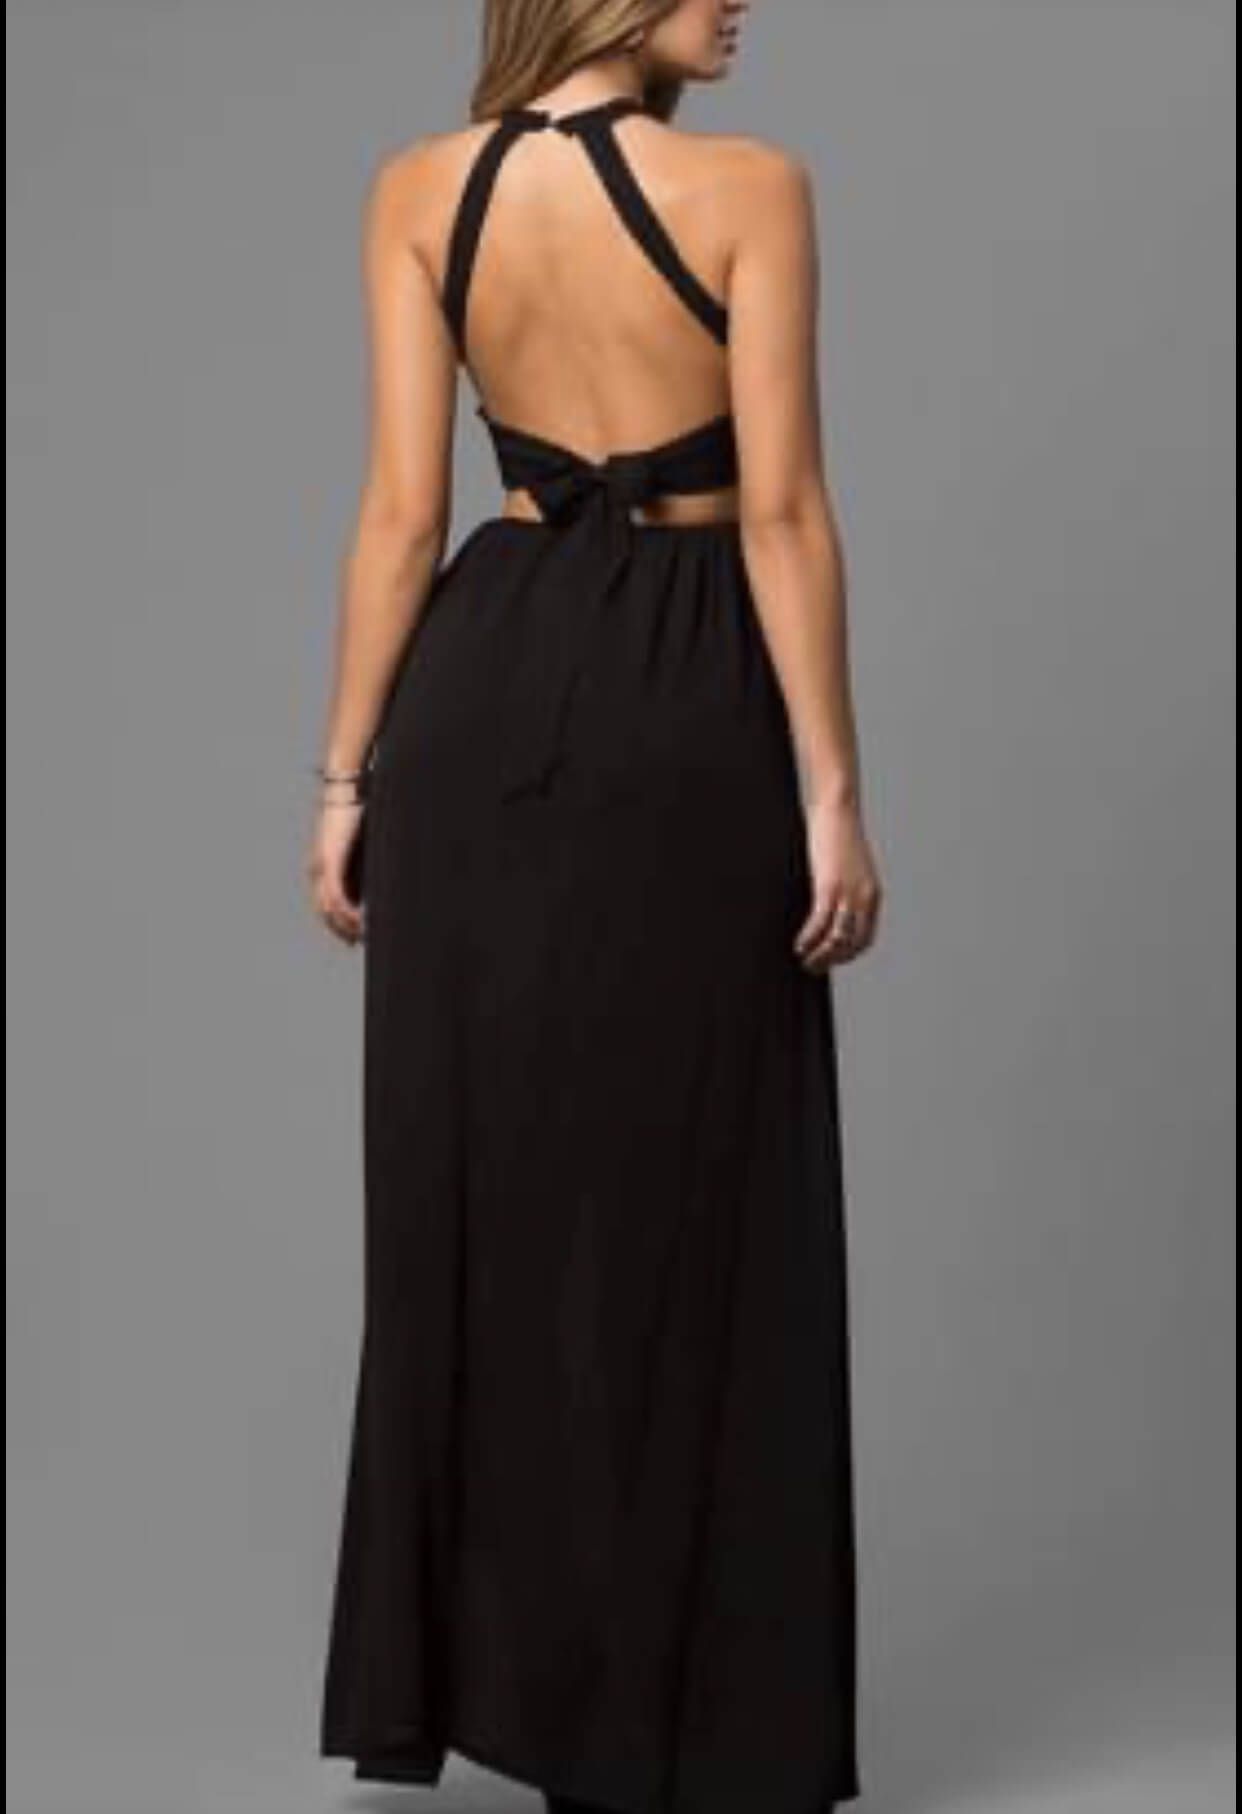 Black Size 2 Side slit Dress on Queenly